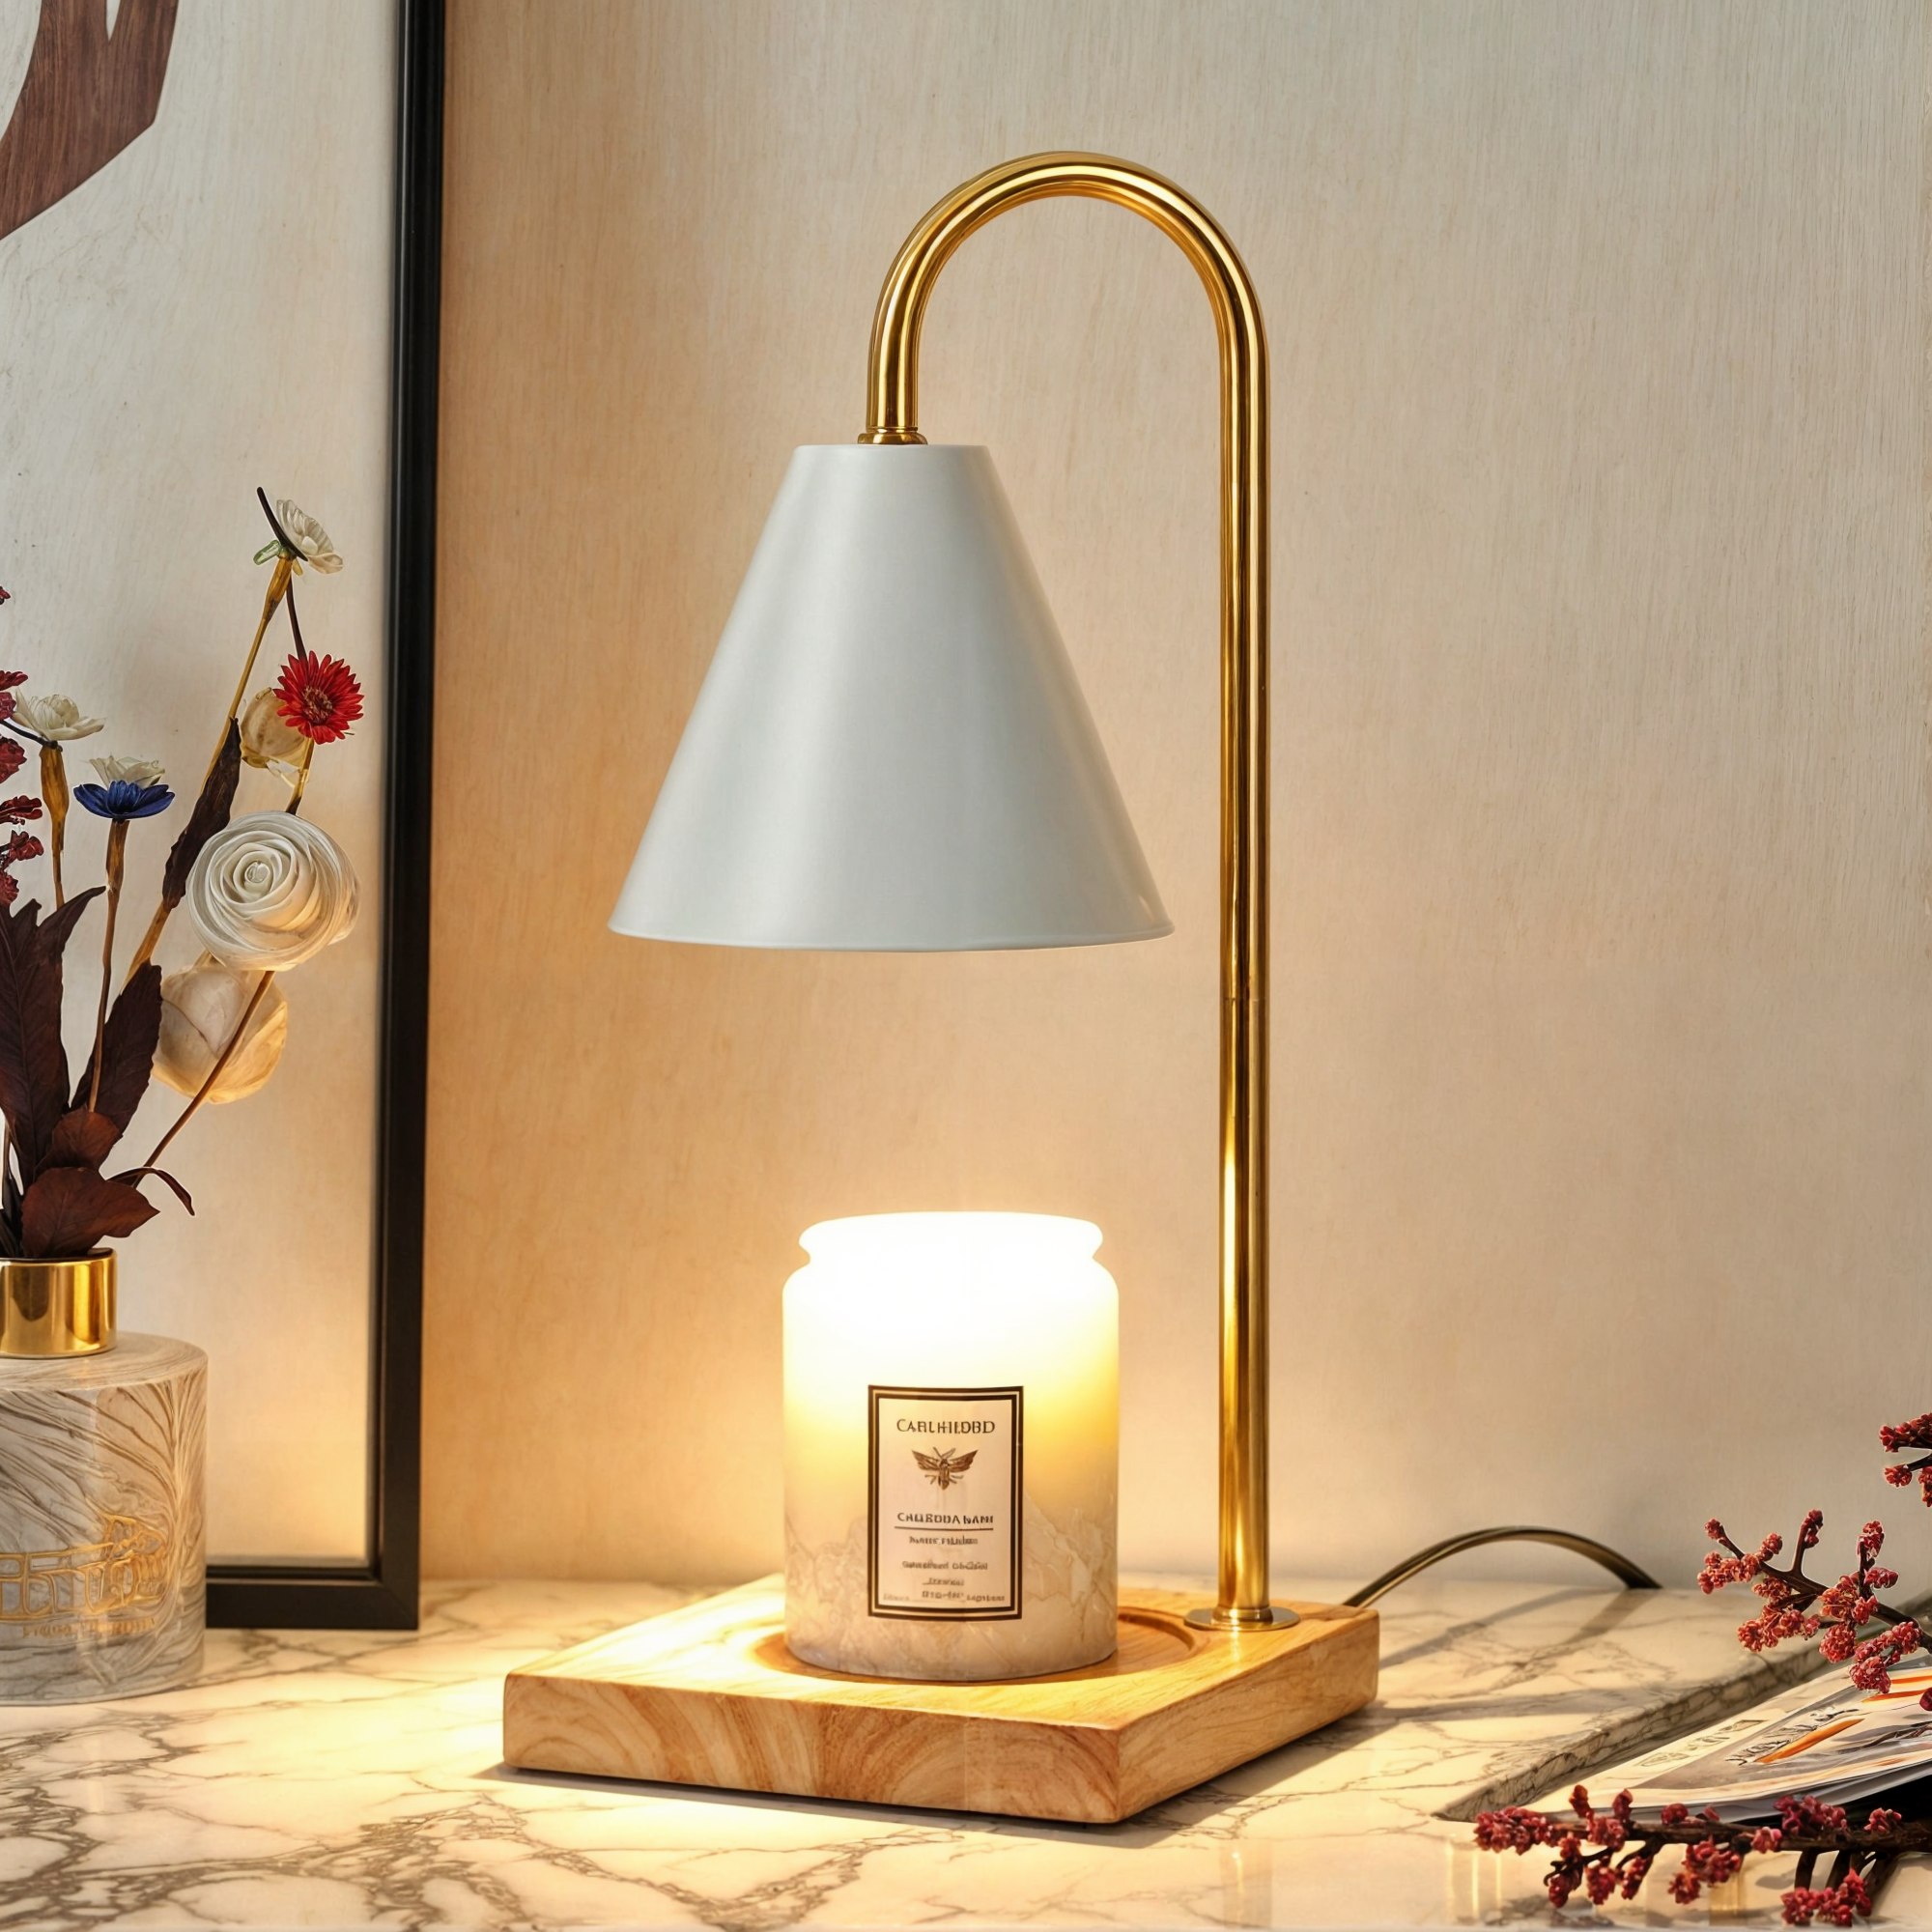 Dimmbare Kerzenwärmerlampe | Elektrischer Aromaschmelzer mit einstellbarer Helligkeit | Holzsockel, modernes Design in Weiß, Schwarz, Gold | Sichere & umweltfreundliche Duftkerzenheizung